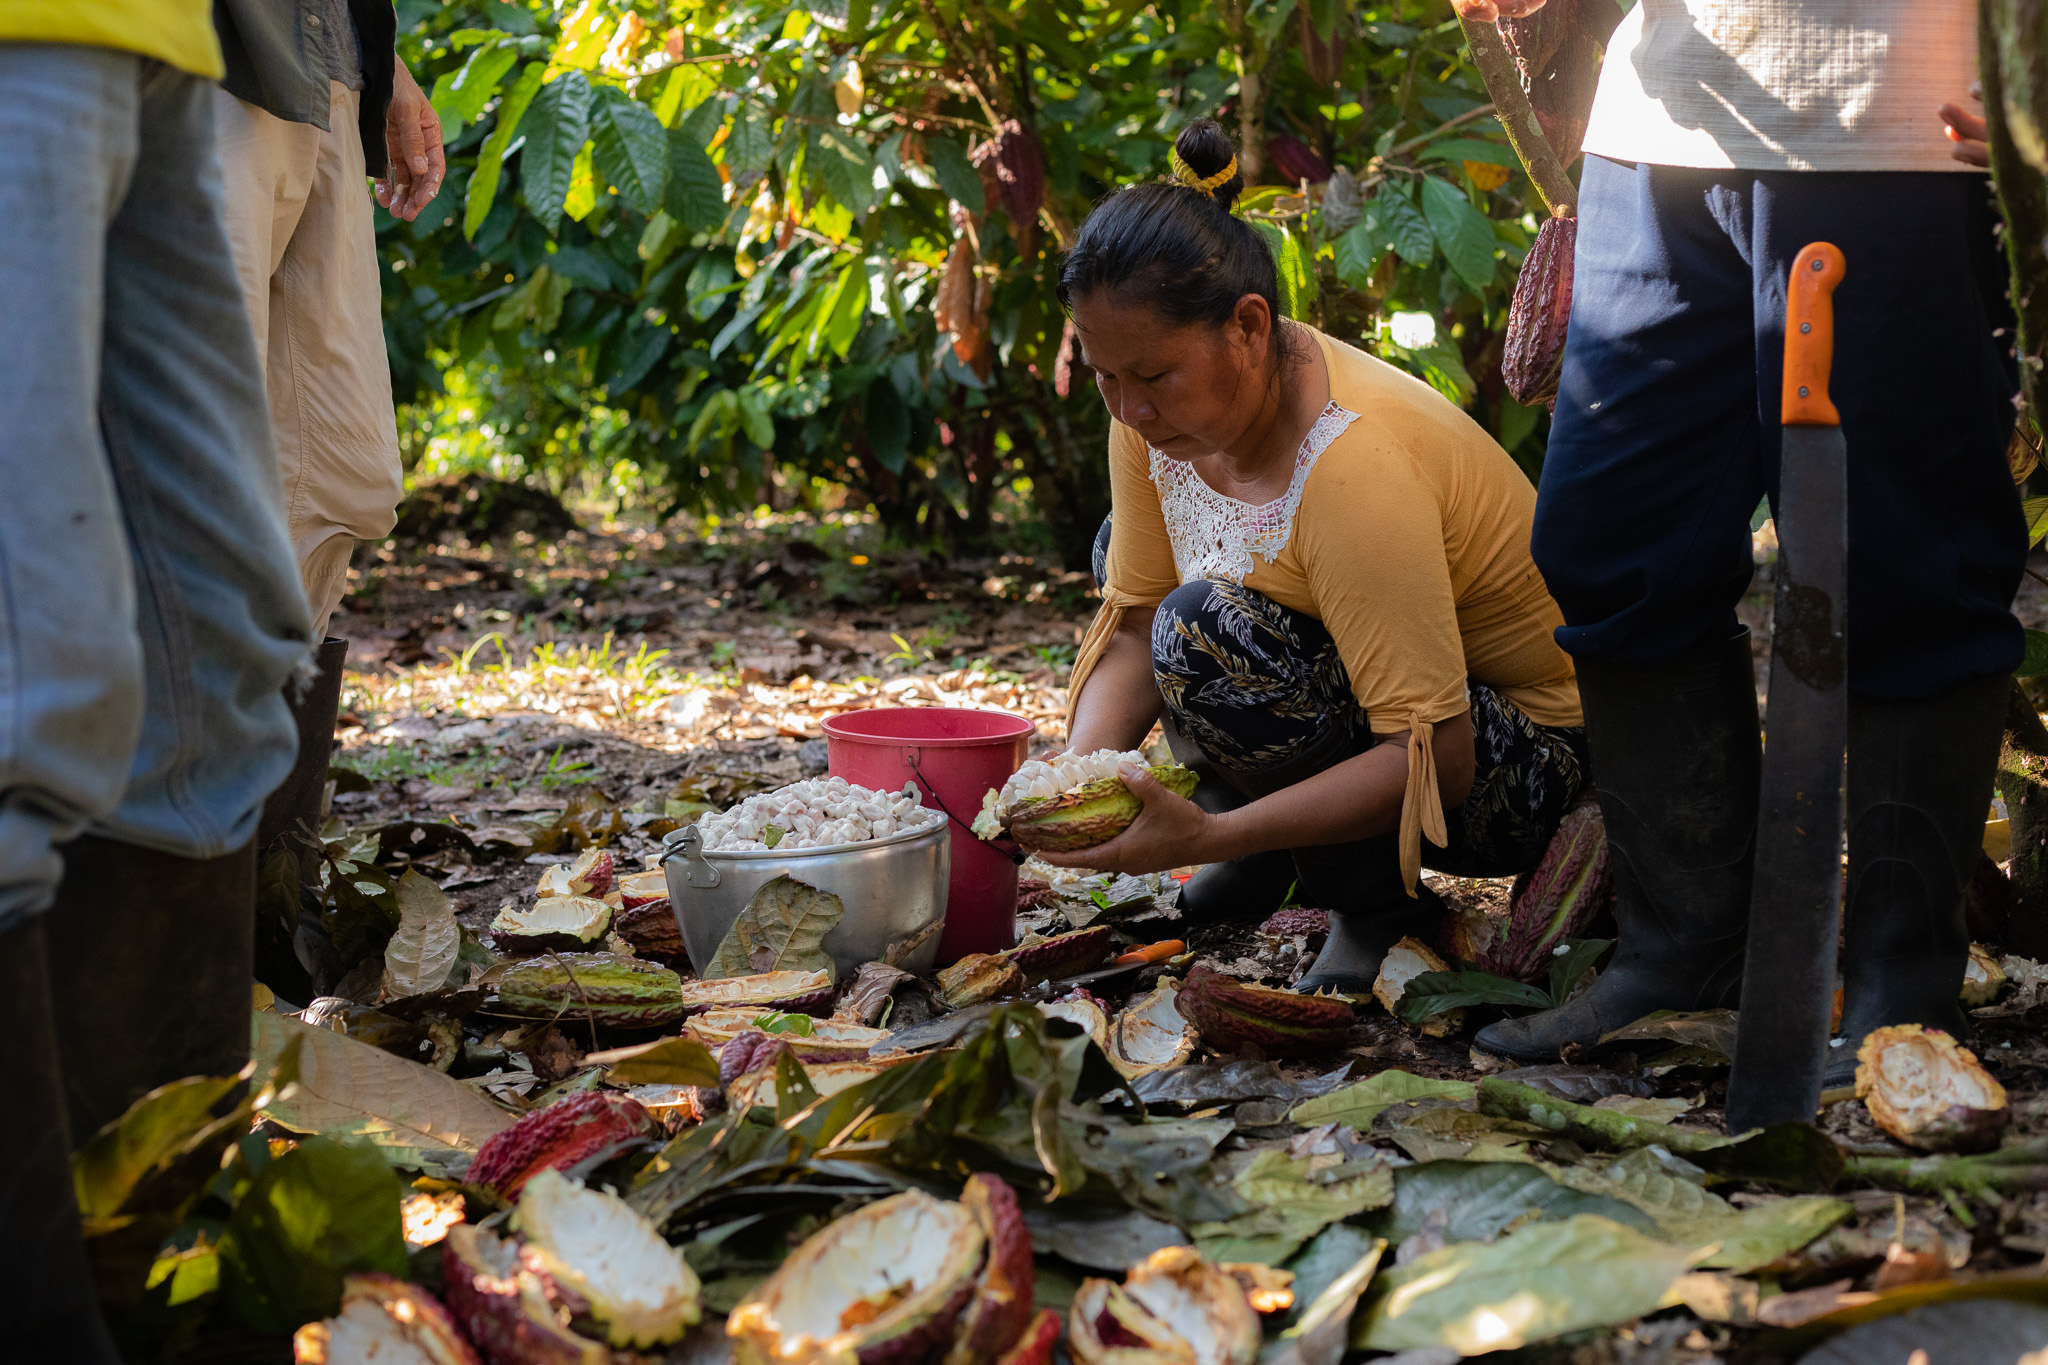 Dahlia Salazar, Gründungsmitglied und ehemalige Präsidentin der Kooperative CSY trennt die frischen Kakaobohnen von der Schale.